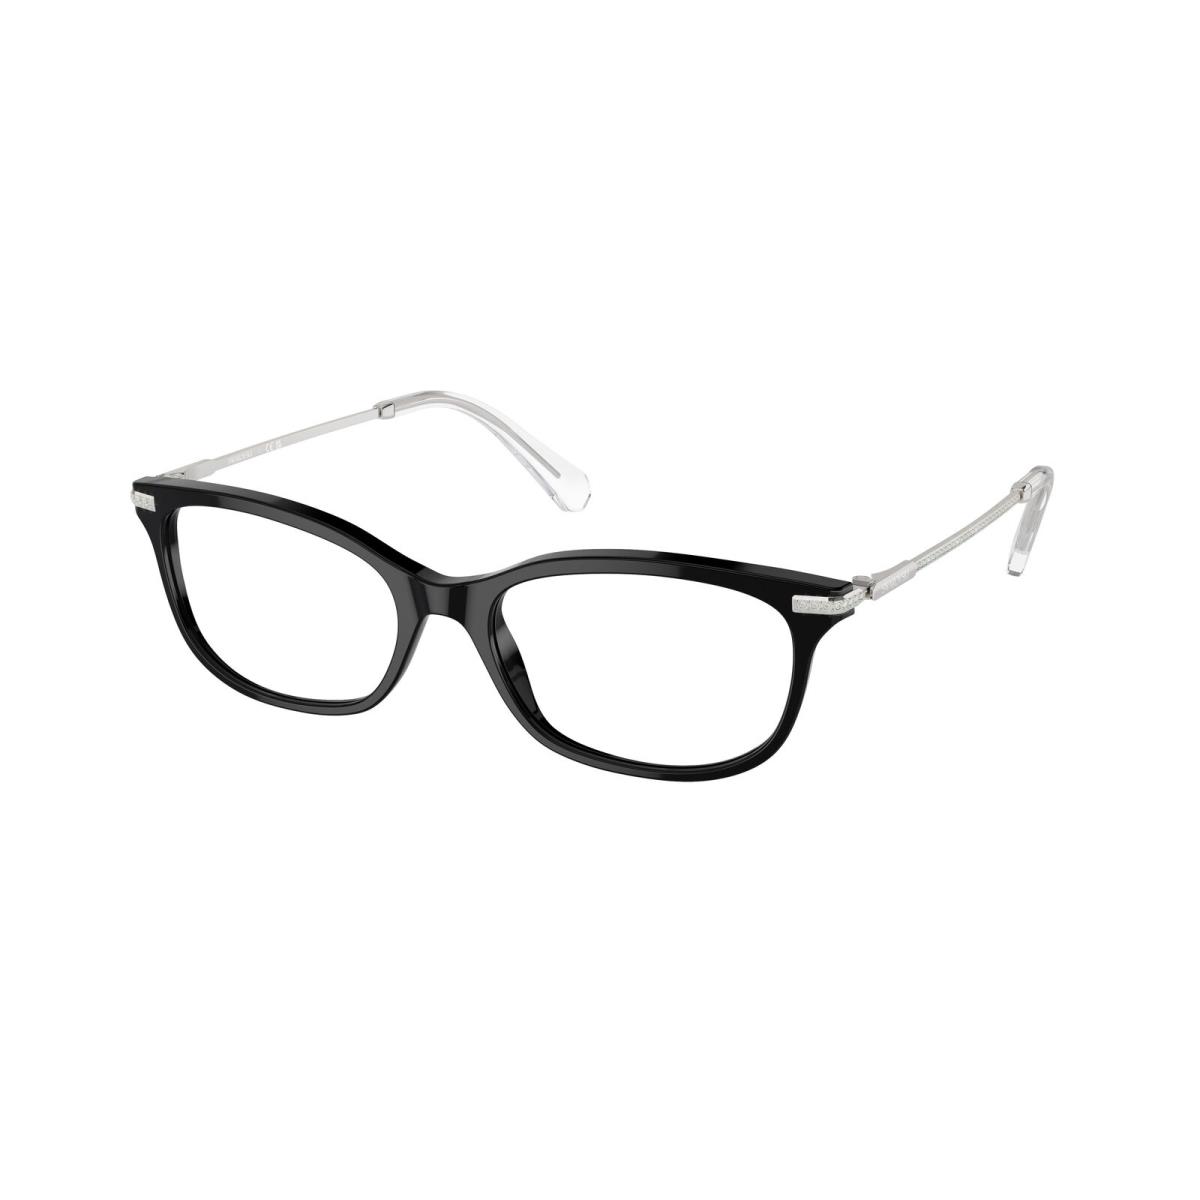 Swarovski SK 2017 Black 1001 Eyeglasses